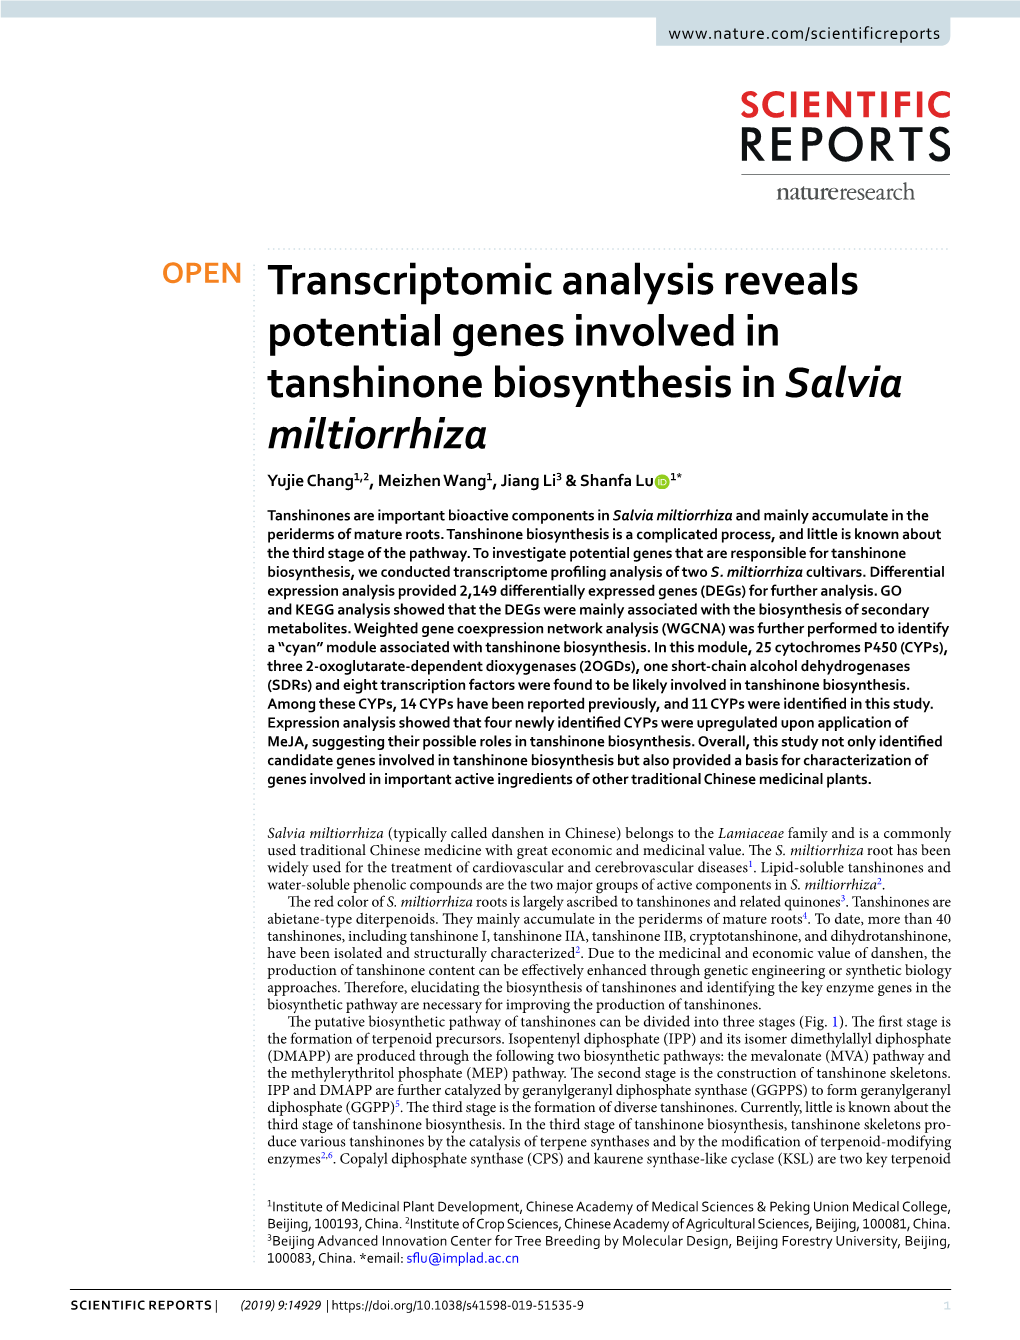 Transcriptomic Analysis Reveals Potential Genes Involved in Tanshinone Biosynthesis in Salvia Miltiorrhiza Yujie Chang1,2, Meizhen Wang1, Jiang Li3 & Shanfa Lu 1*